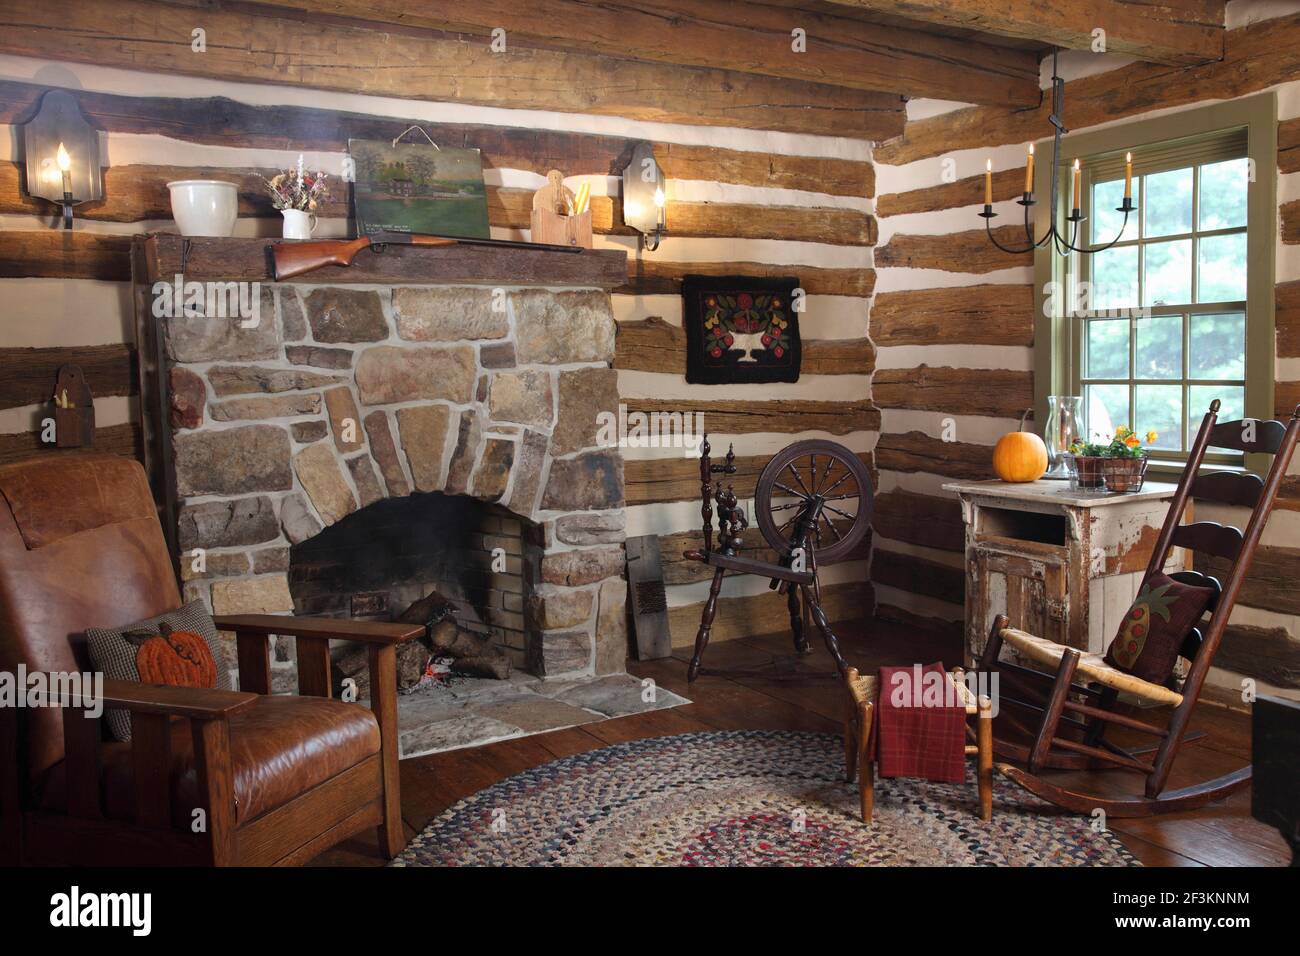 Wohnzimmer in historischer Blockhütte mit Steinkamin und freiliegenden Holzstämmen. Schaukelstuhl, Mission-Stil Stuhl und Spinnrad, zusammen mit Teppich. Stockfoto